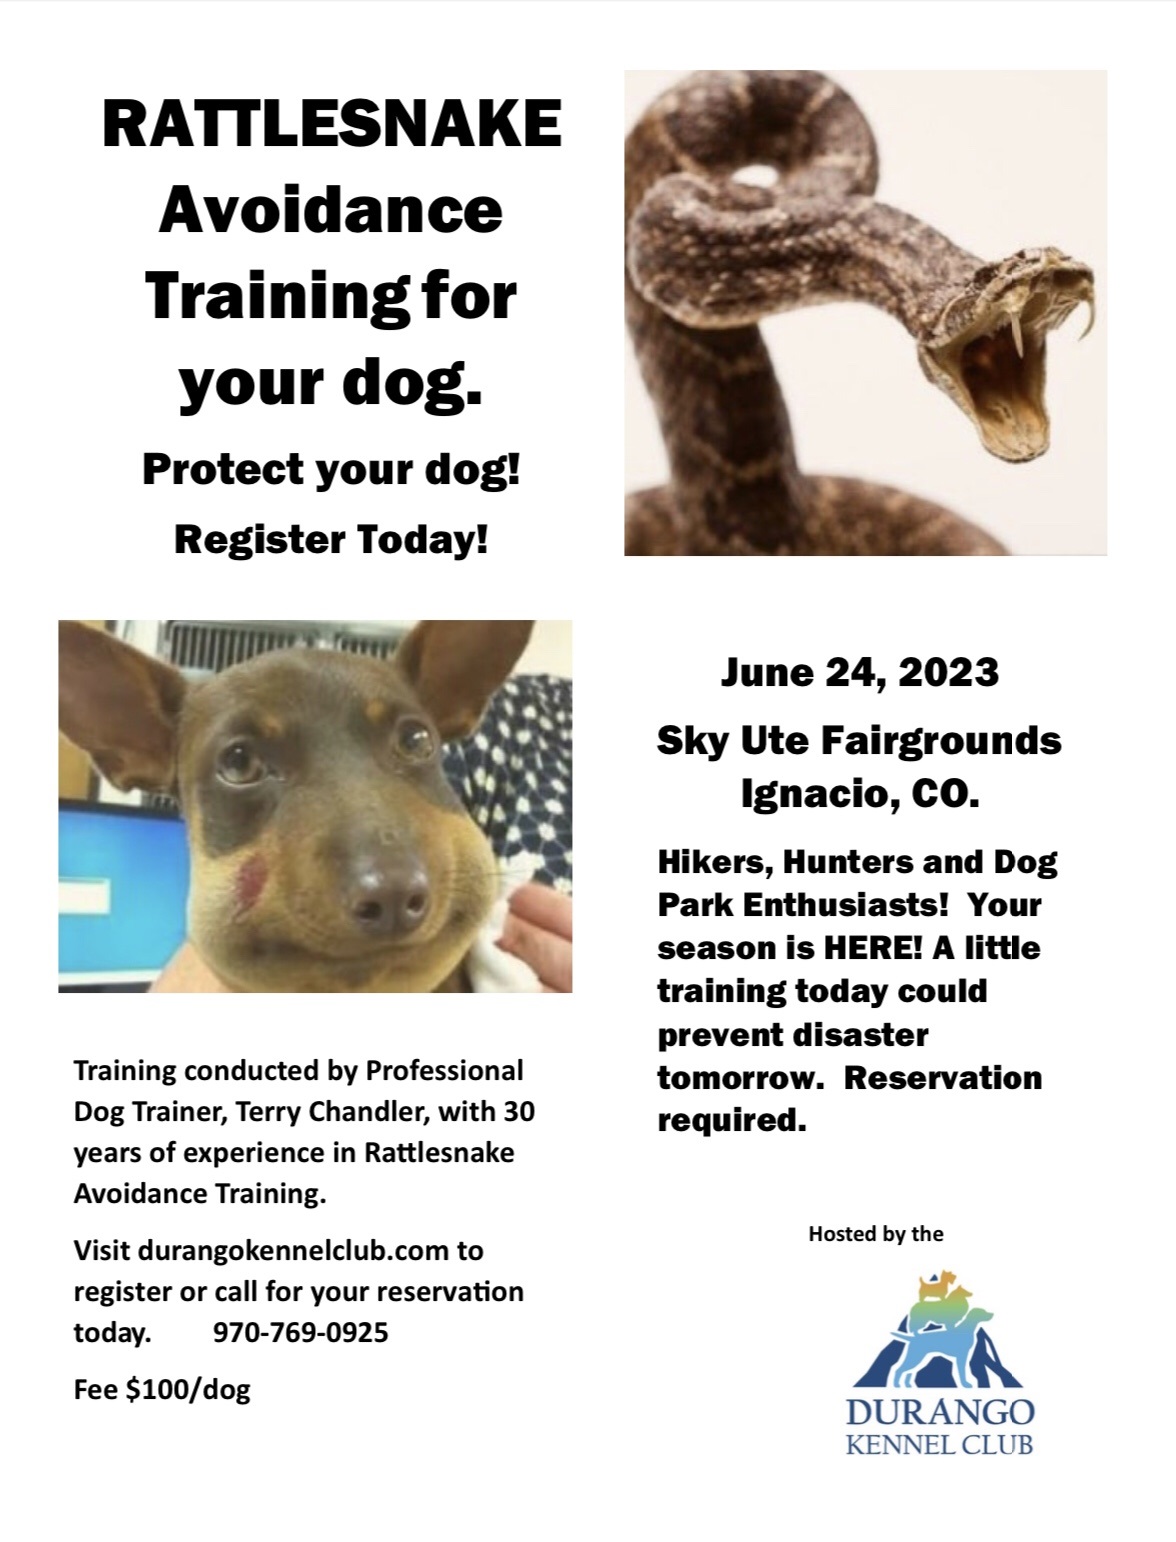 Rattlesnake Avoidance Training For Your Dog